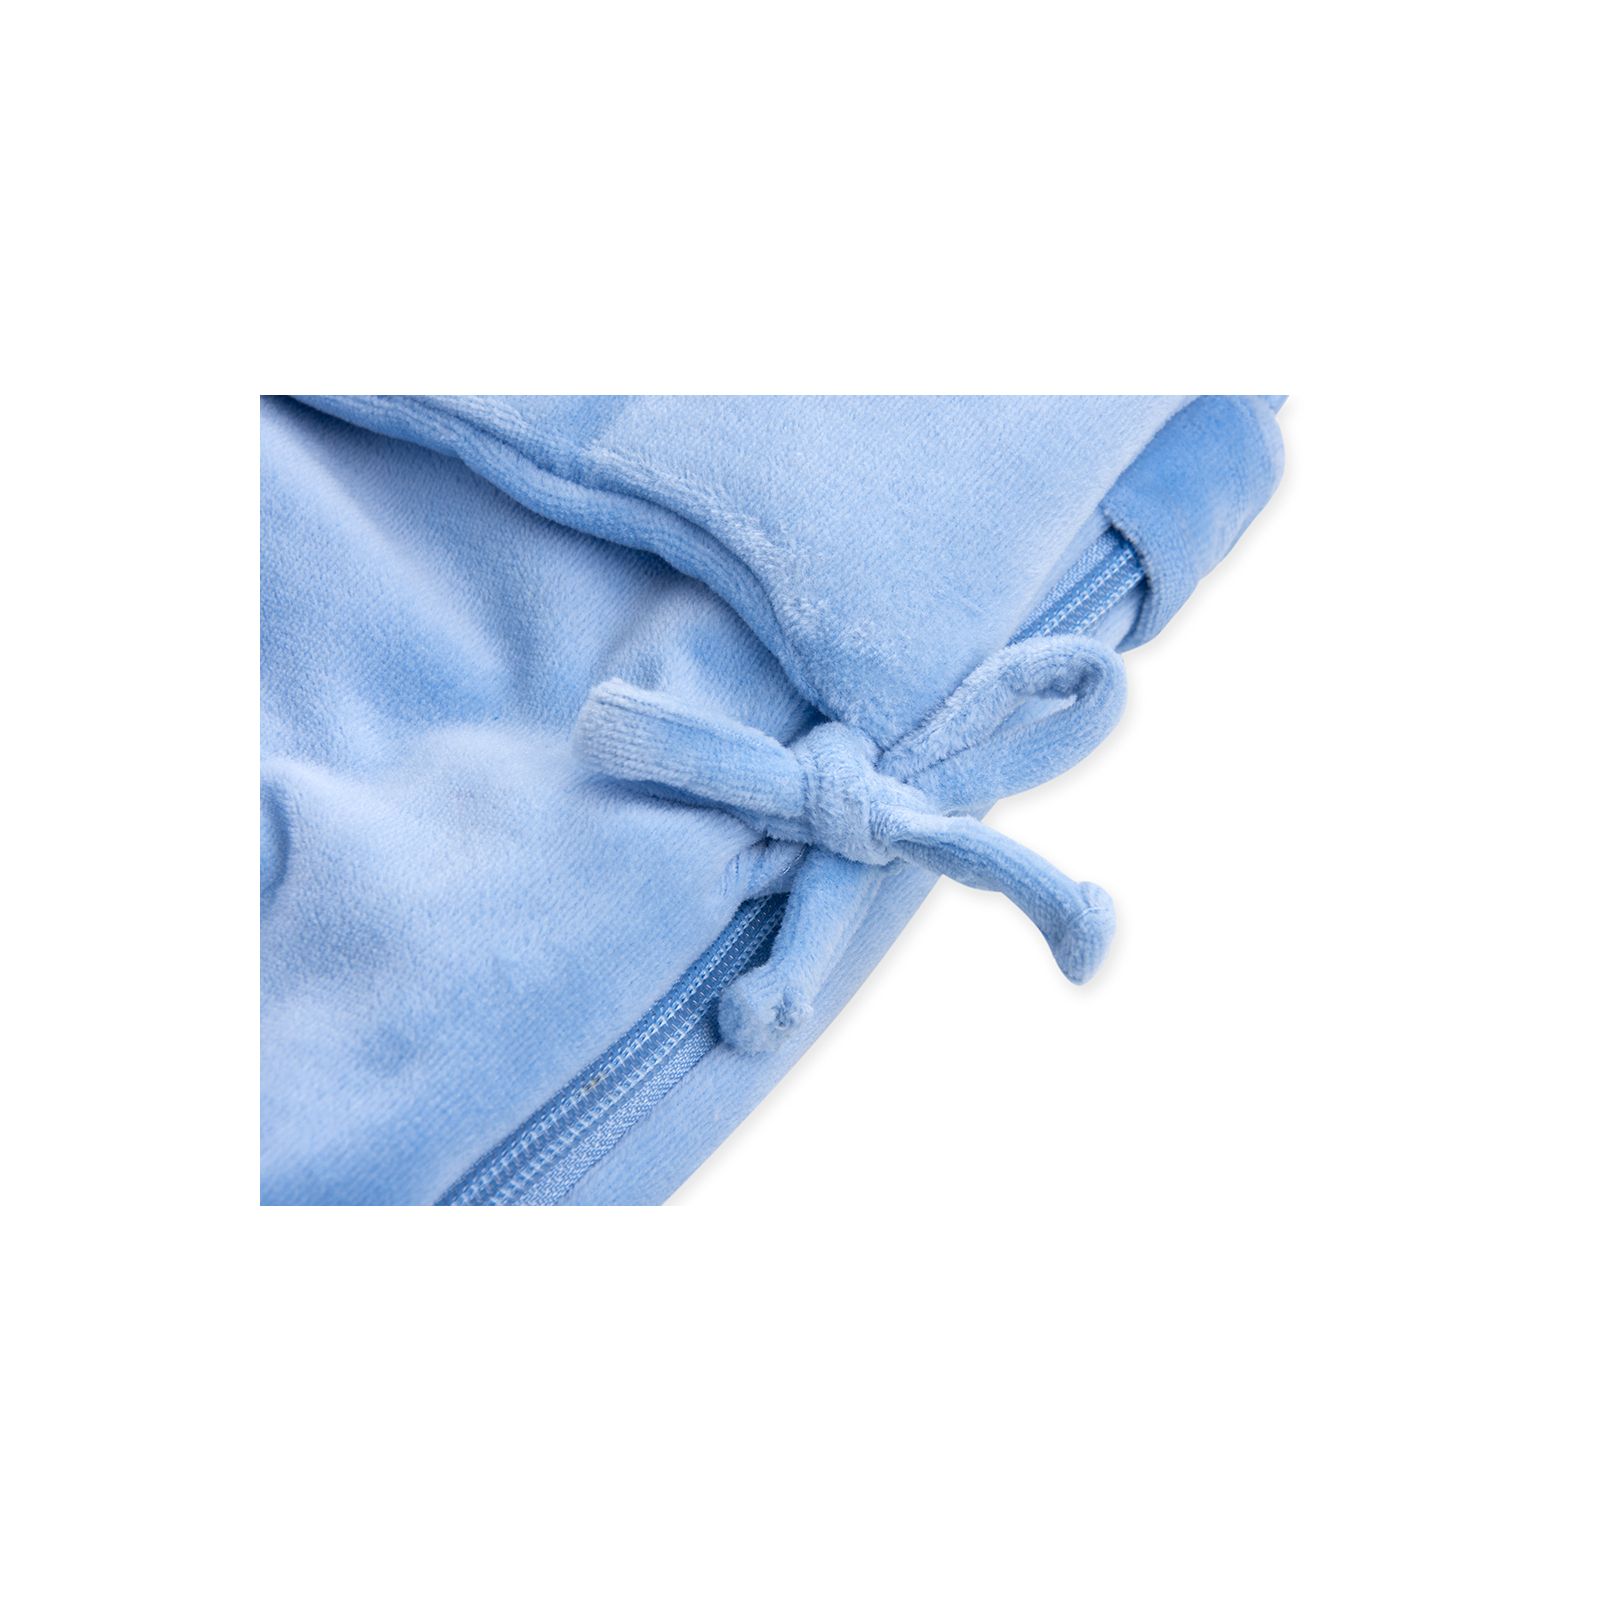 Спальный конверт Luvena Fortuna голубой многофункциональный с рисунком слоненка (G8989) изображение 5